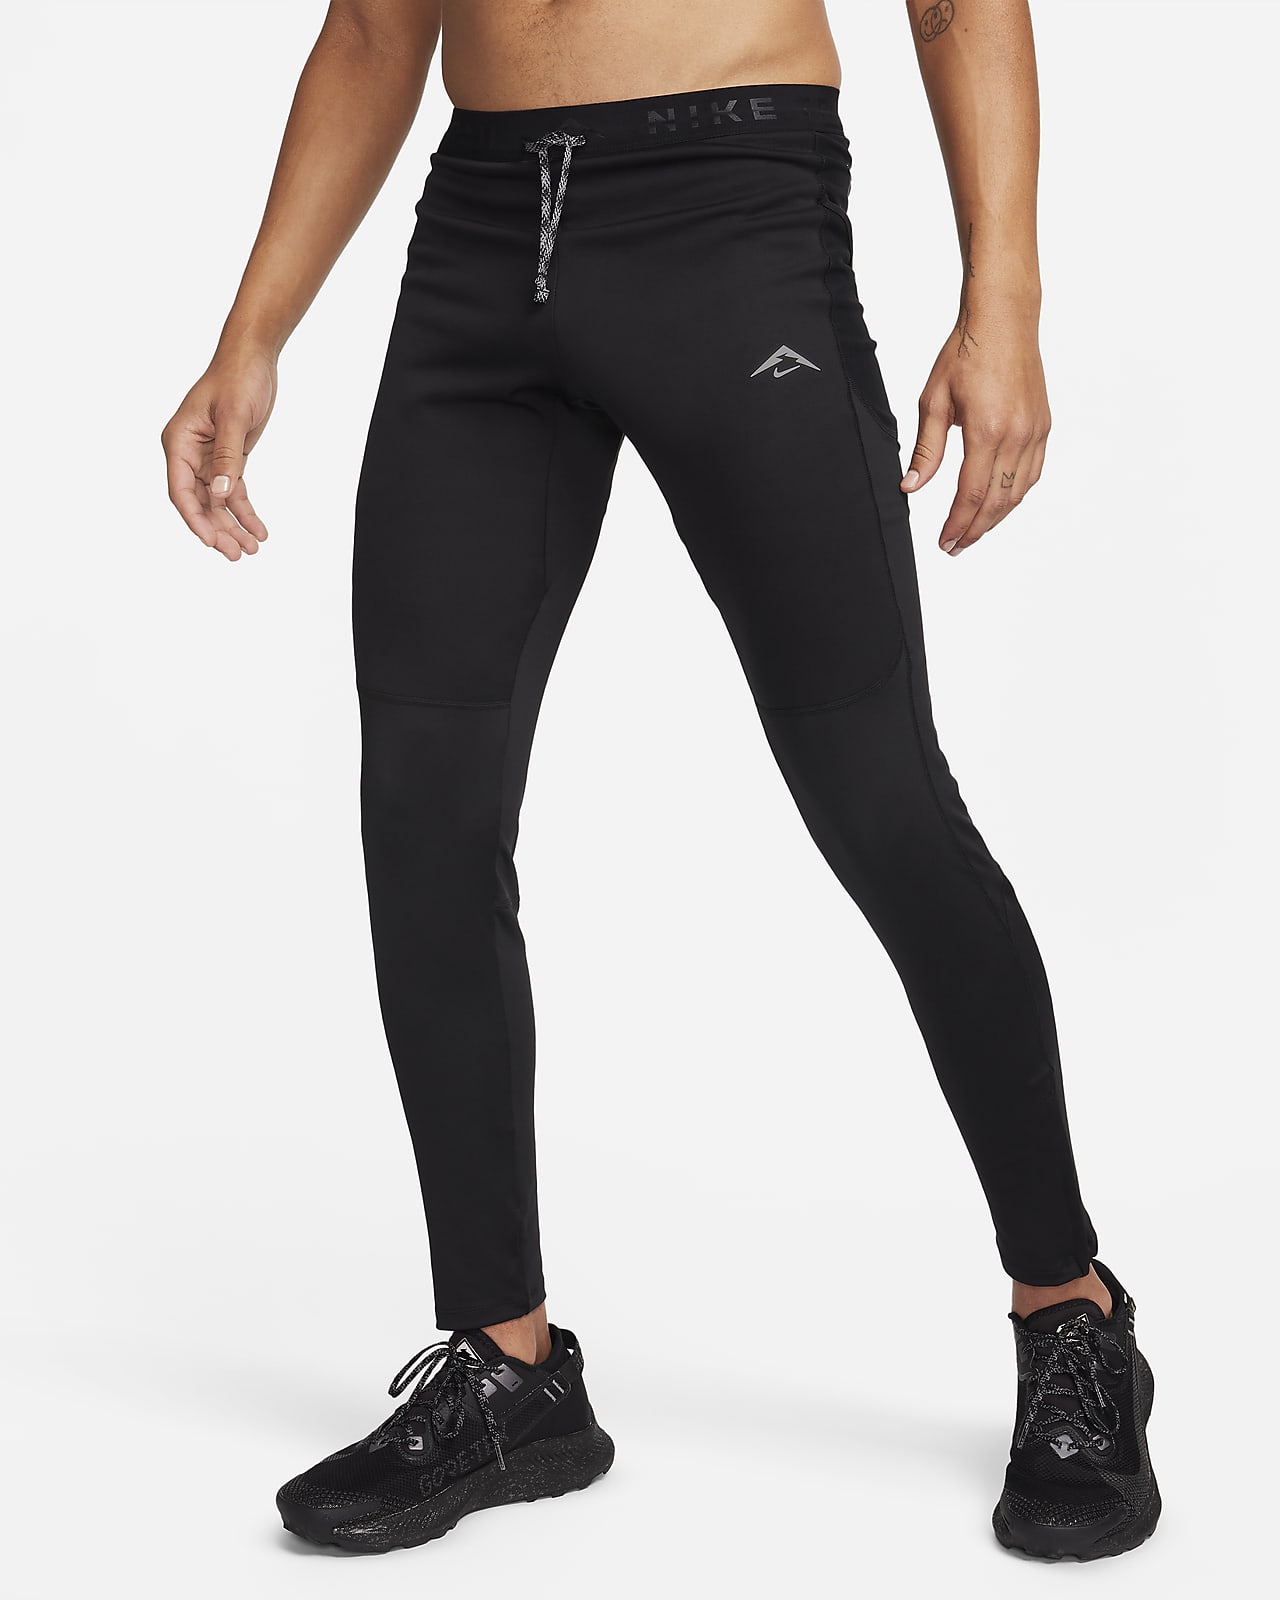 Running Shorts Tights & Leggings. Nike CA